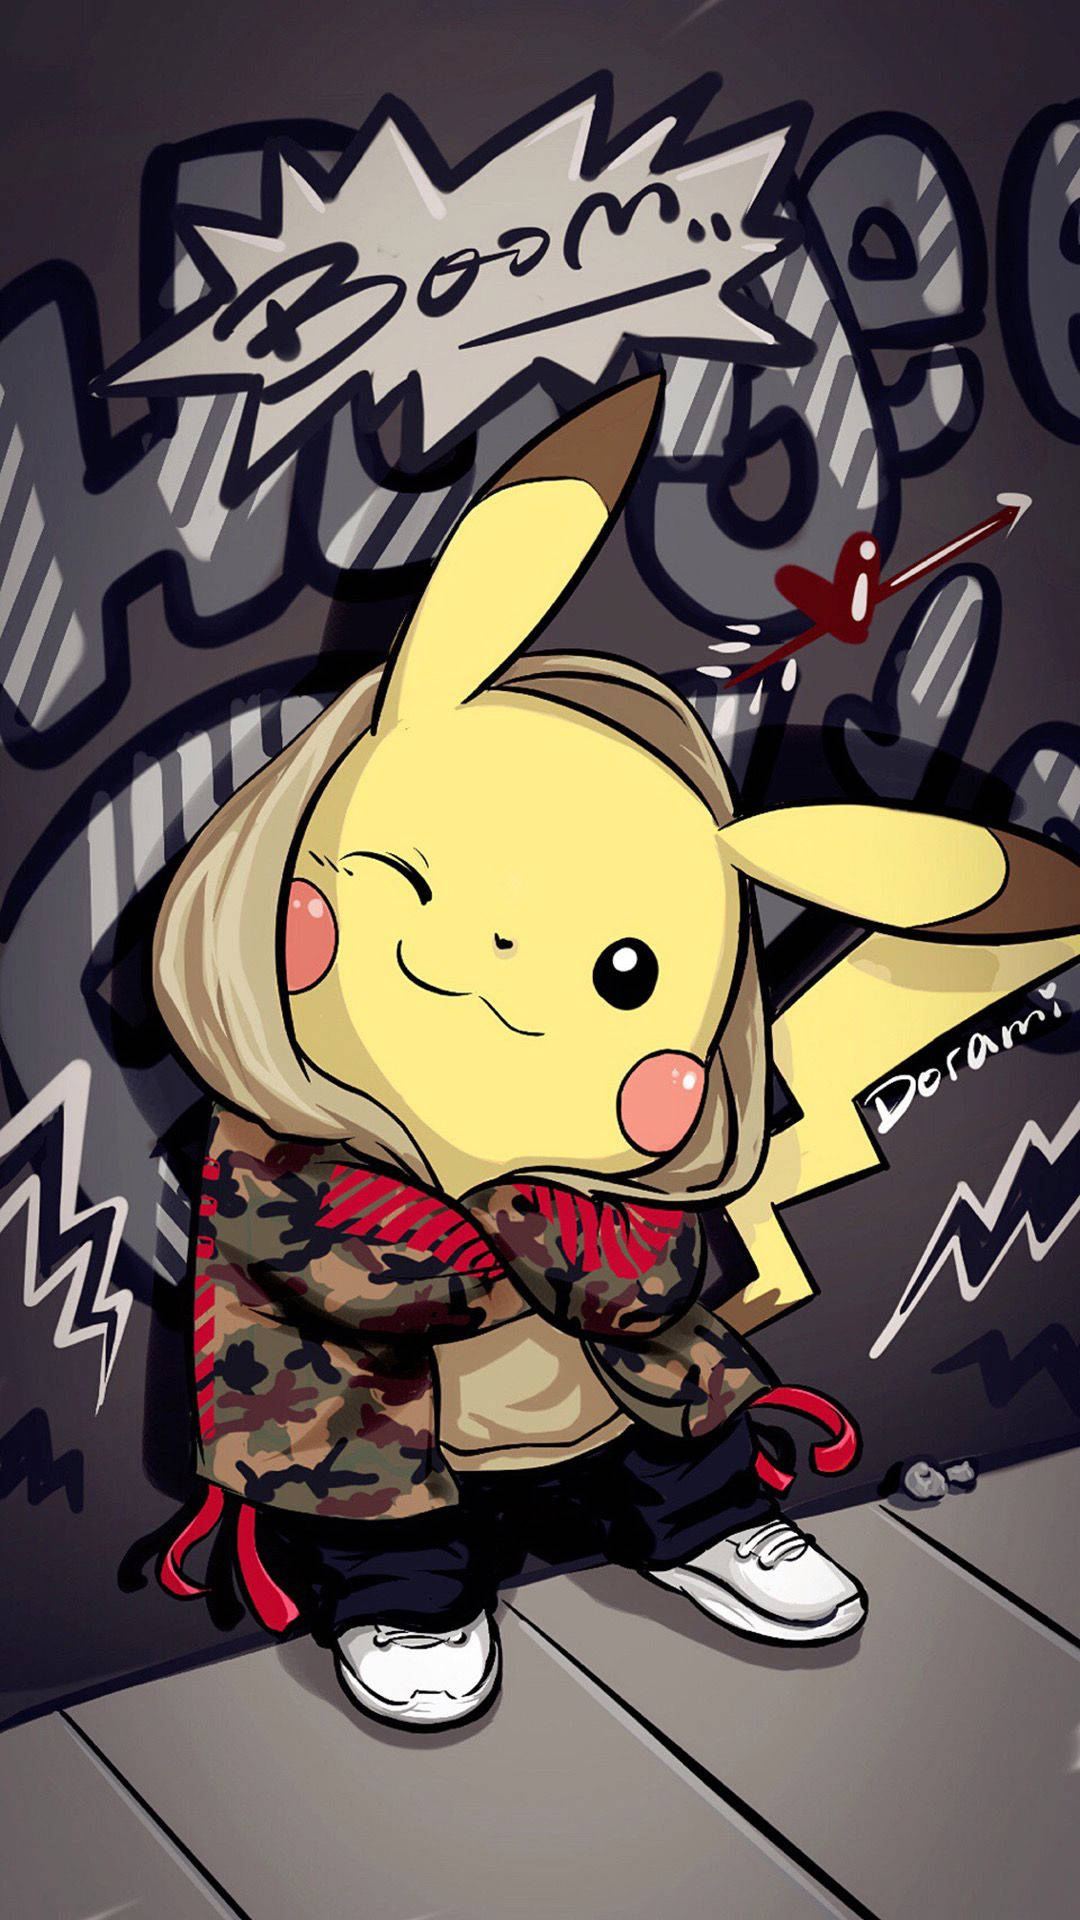 Pikachu With Graffiti Art Background